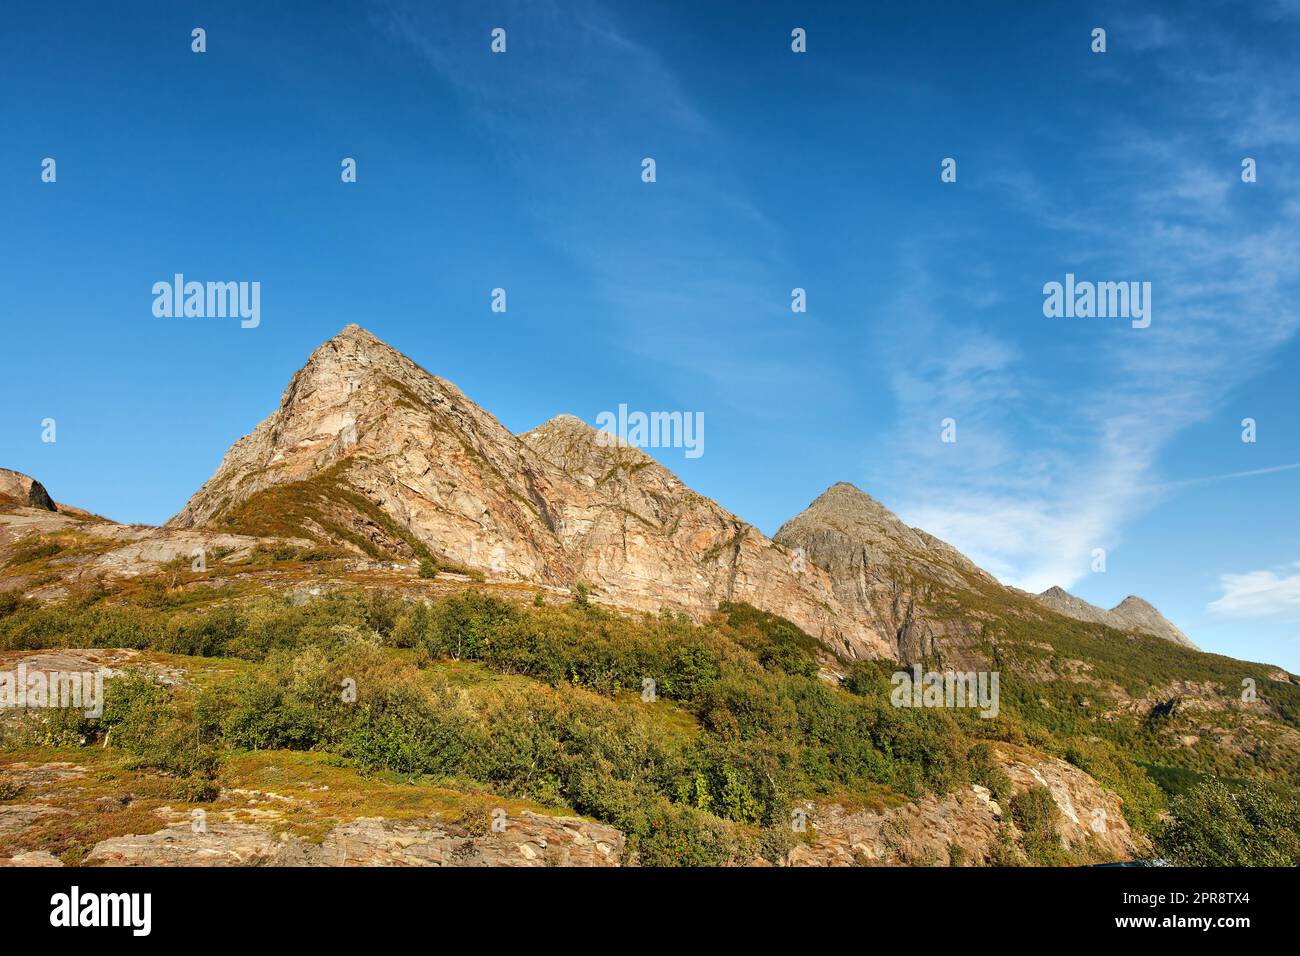 Malerische Berglandschaft vor blauem Himmel mit Kopierbereich. Majestätischer Blick auf Pflanzen, die auf einem felsigen Hügel wachsen, und Klippen in der Natur. Ein wunderschönes Reiseziel und Touristenattraktion Stockfoto